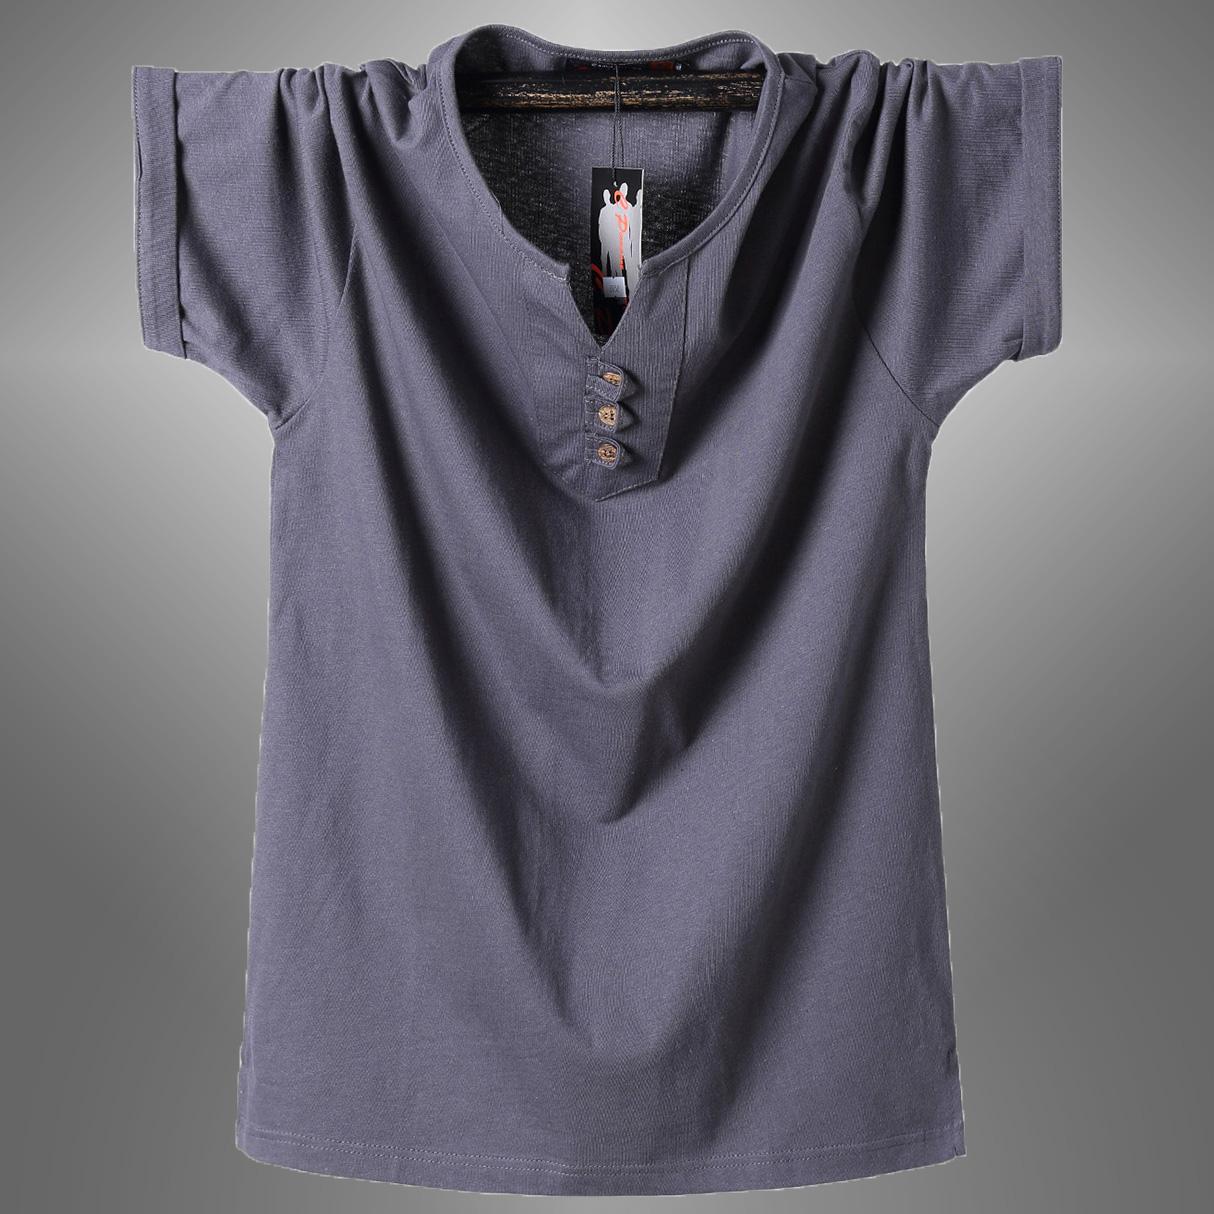 Изображение товара: 2019 Мужская футболка, Мужская Однотонная футболка с полосками сбоку, Camisa, мужская повседневная хлопковая рубашка, мужские деловые топы, футболки M-8XL, размера плюс